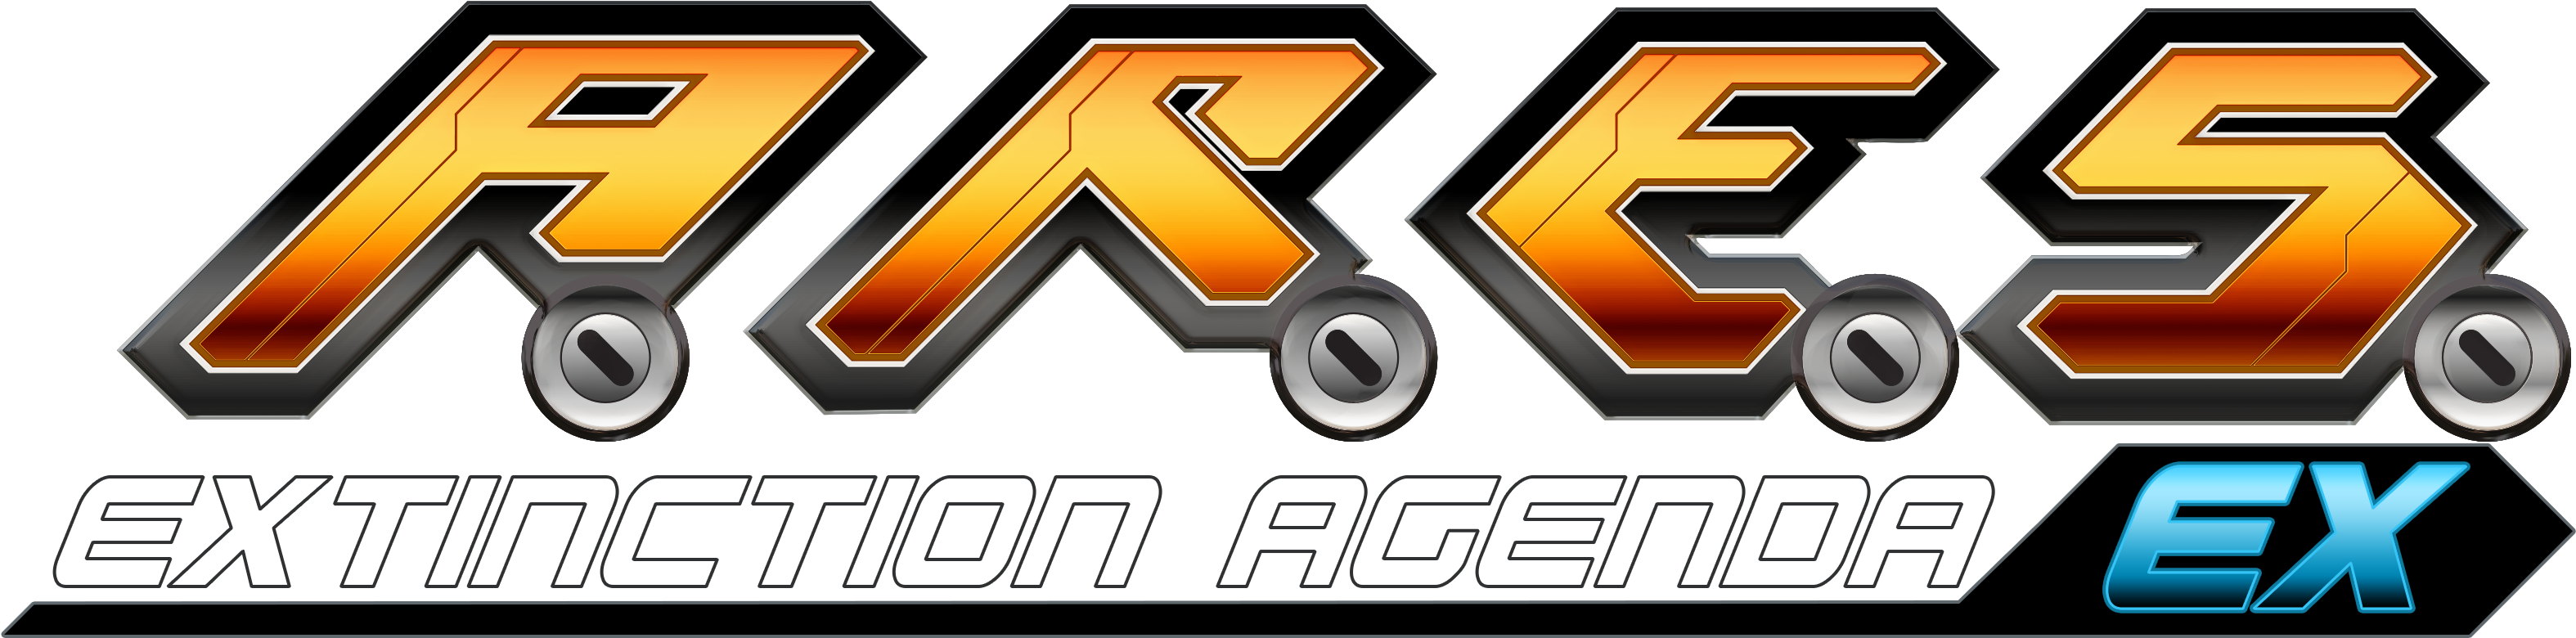 Xbox Live Arcade Logo Png - Ares Extinction Agenda Logo (3888x1440)